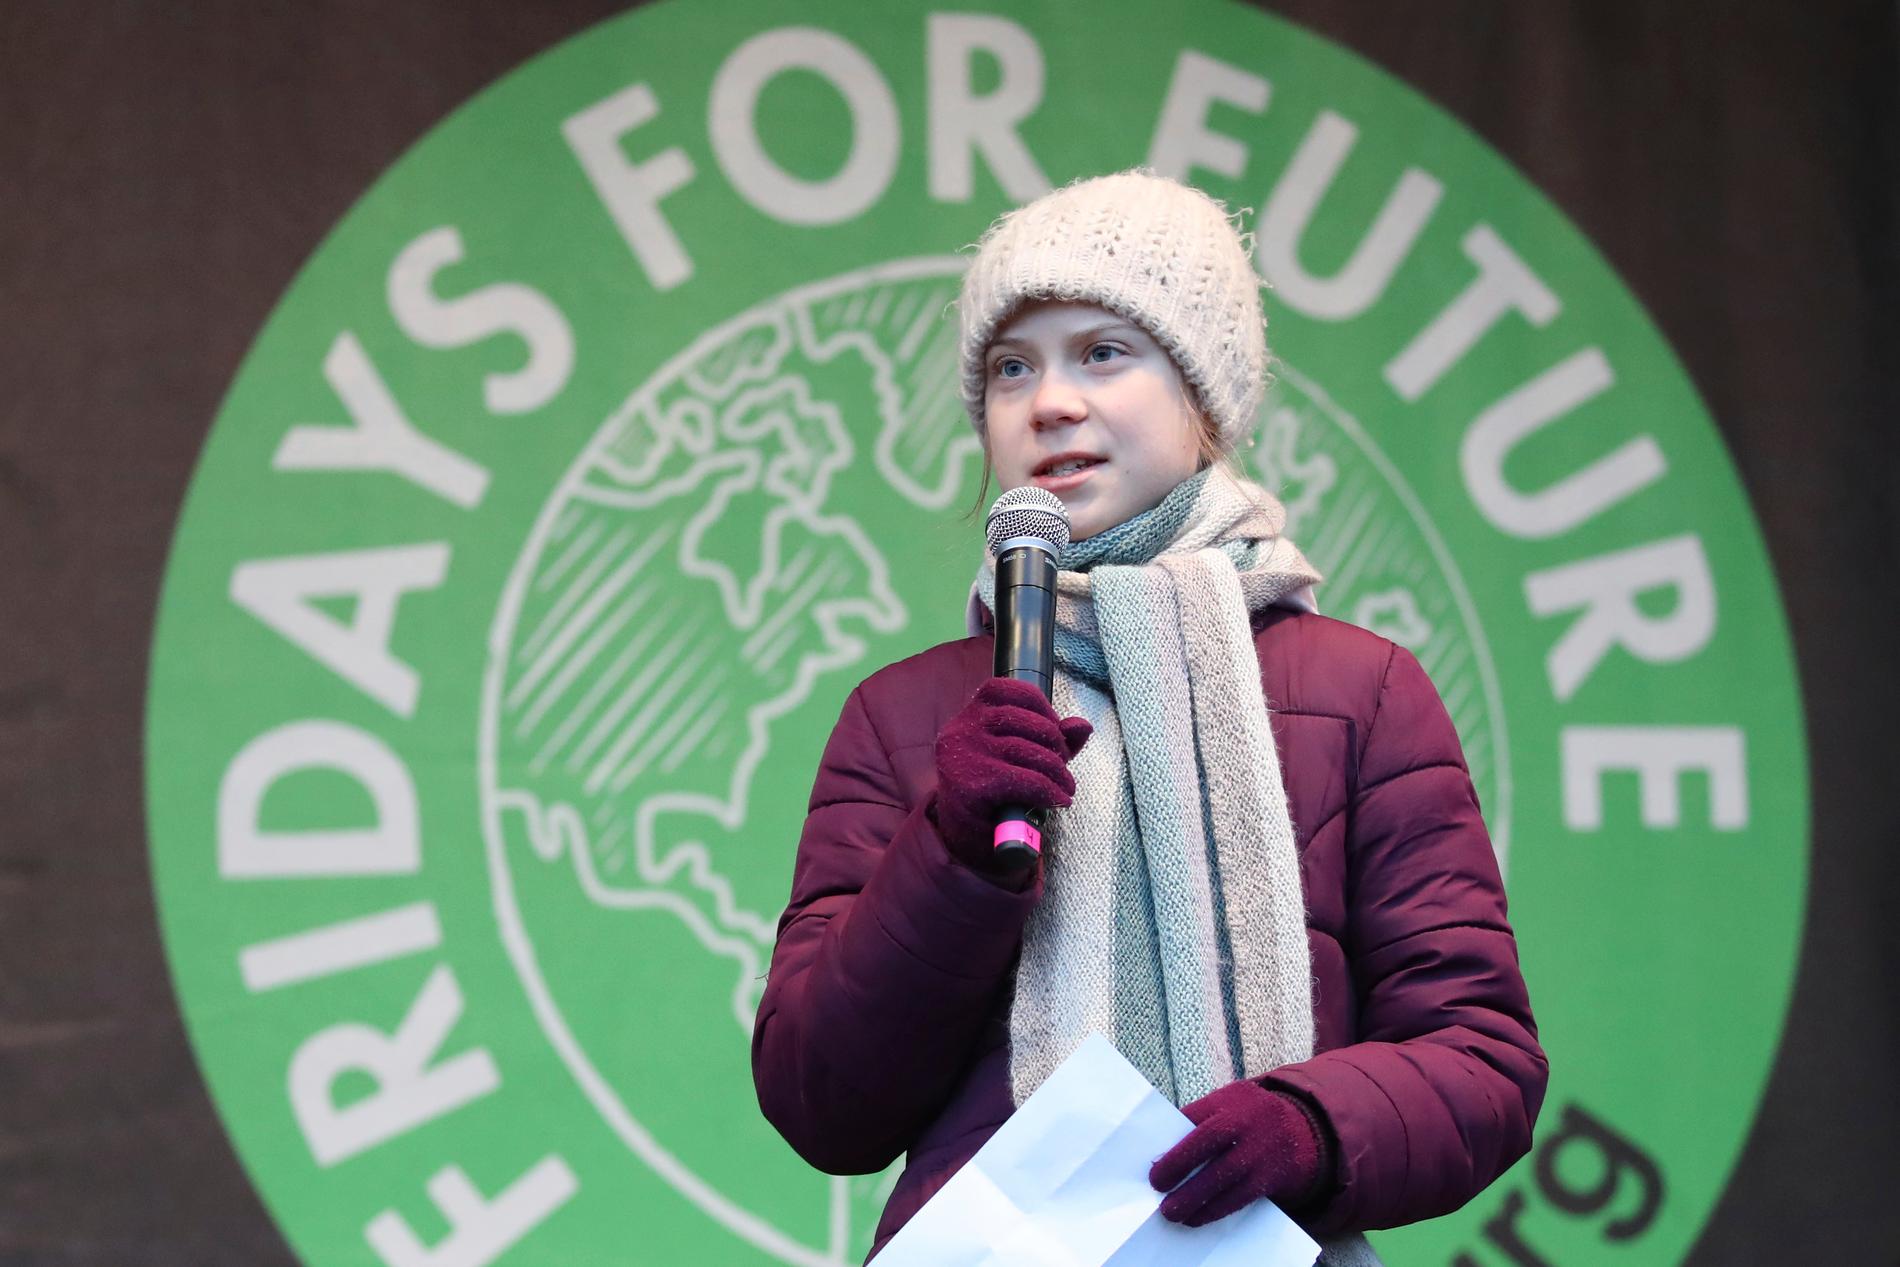 Greta Thunberg manar till kamp för klimatet i sitt tal i Hamburg.